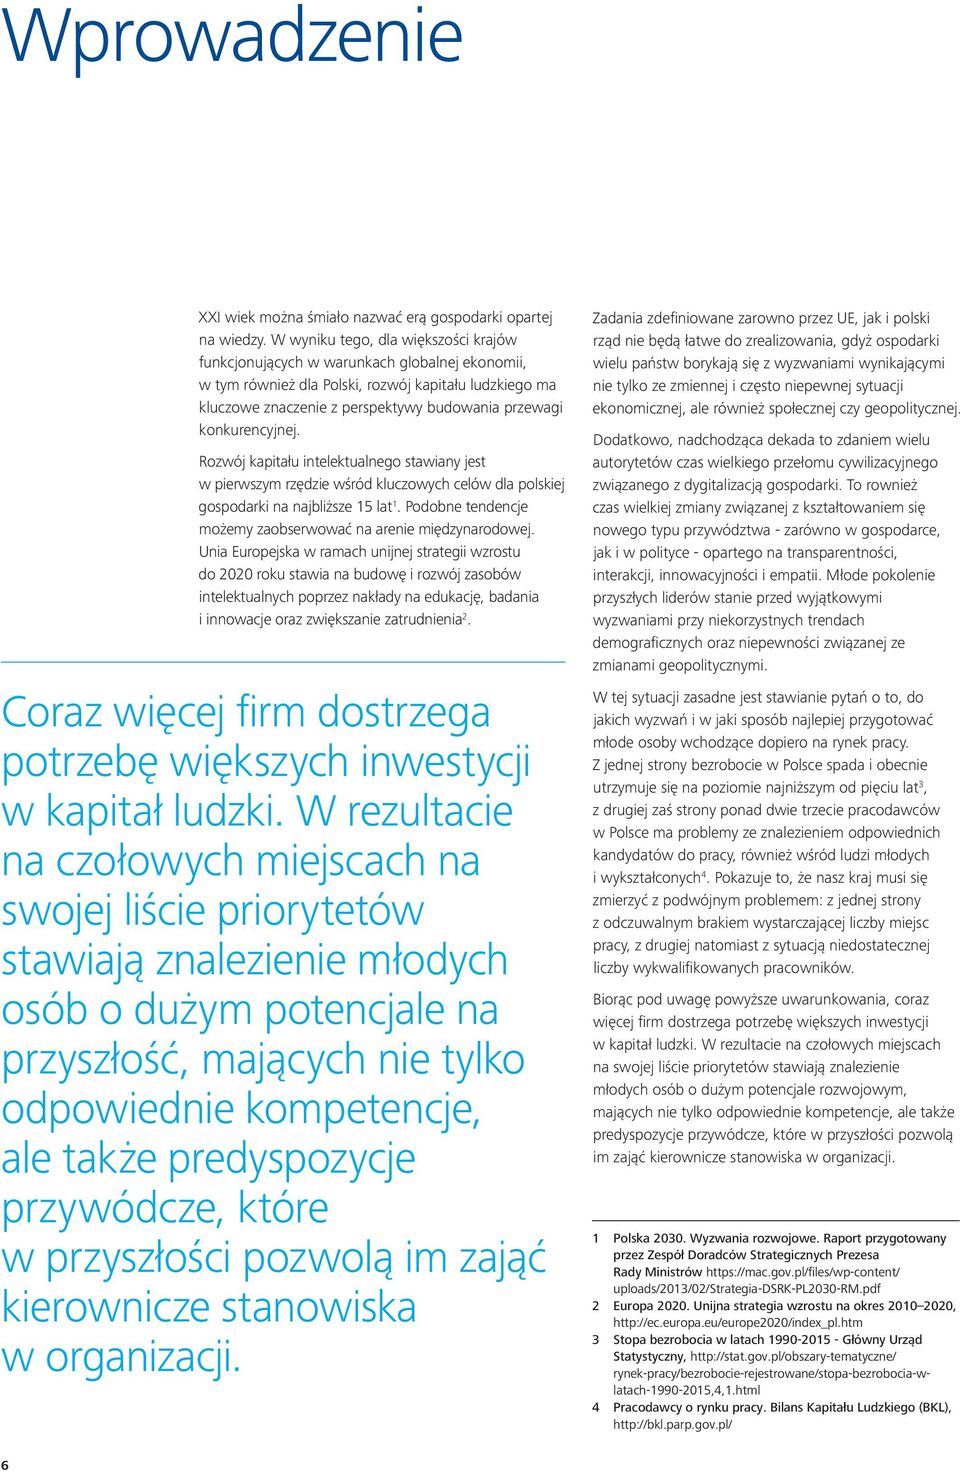 konkurencyjnej. Rozwój kapitału intelektualnego stawiany jest w pierwszym rzędzie wśród kluczowych celów dla polskiej gospodarki na najbliższe 15 lat 1.